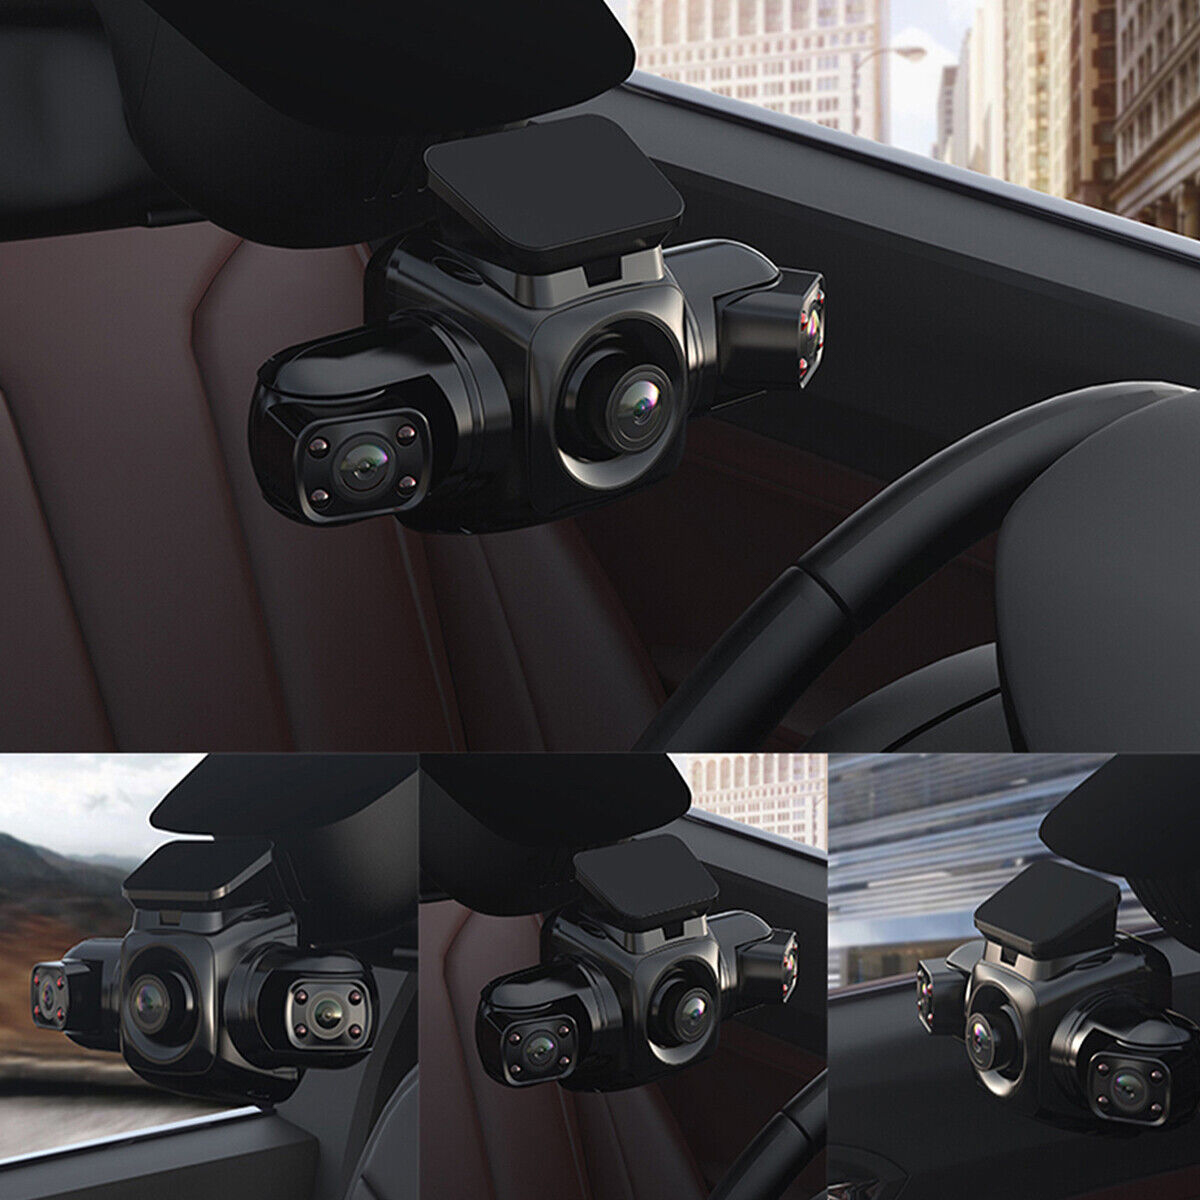 4 cameras Car DVR Dash Cam 2K Wifi GPS 360 Degree Panoramic View